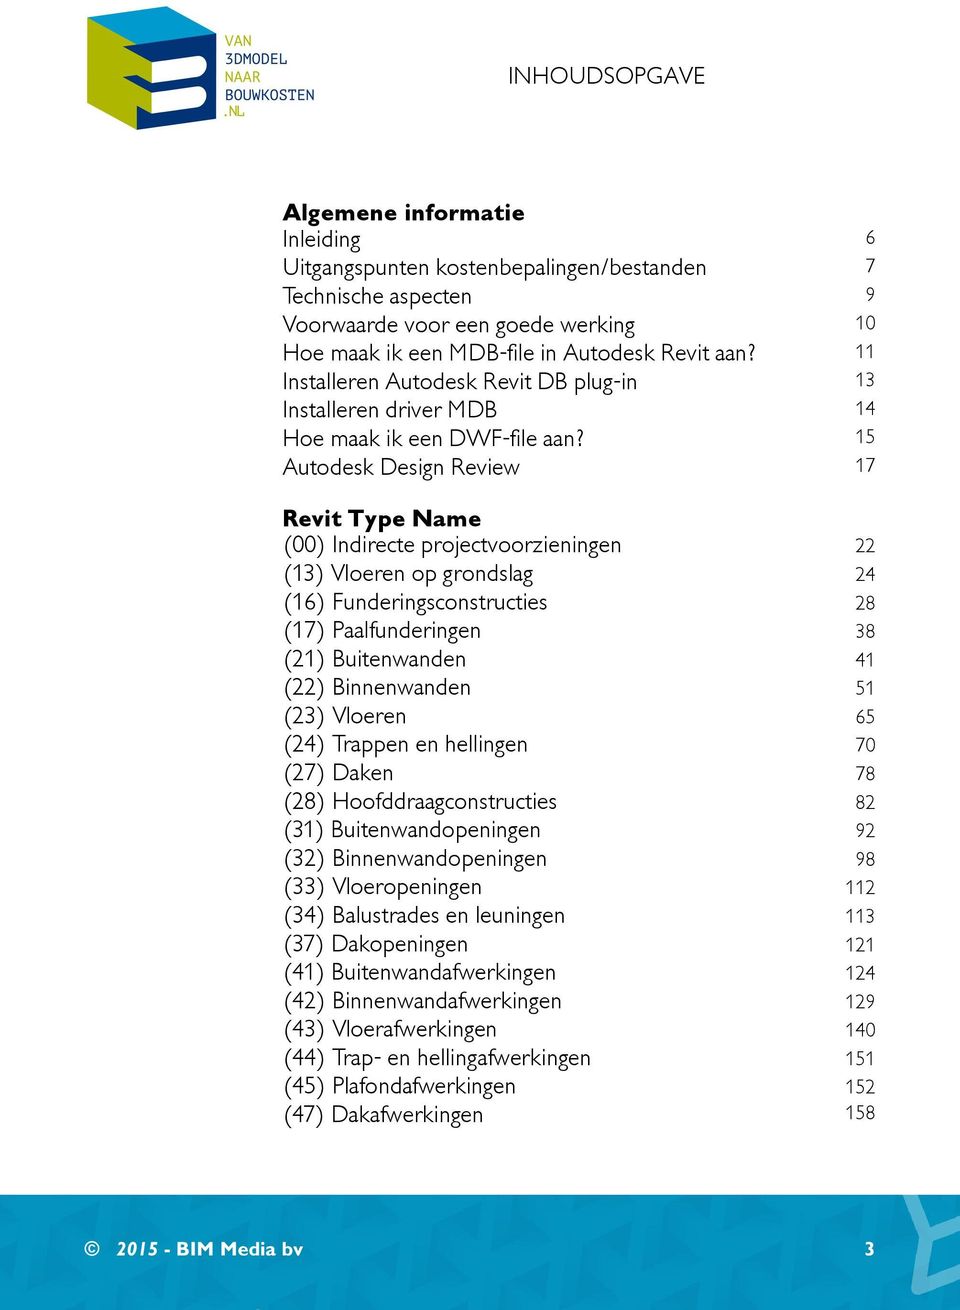 15 Autodesk Design Review 17 (00) Indirecte projectvoorzieningen 22 (13) Vloeren op grondslag 24 (16) Funderingsconstructies 28 (17) Paalfunderingen 38 (21) Buitenwanden 41 (22) Binnenwanden 51 (23)